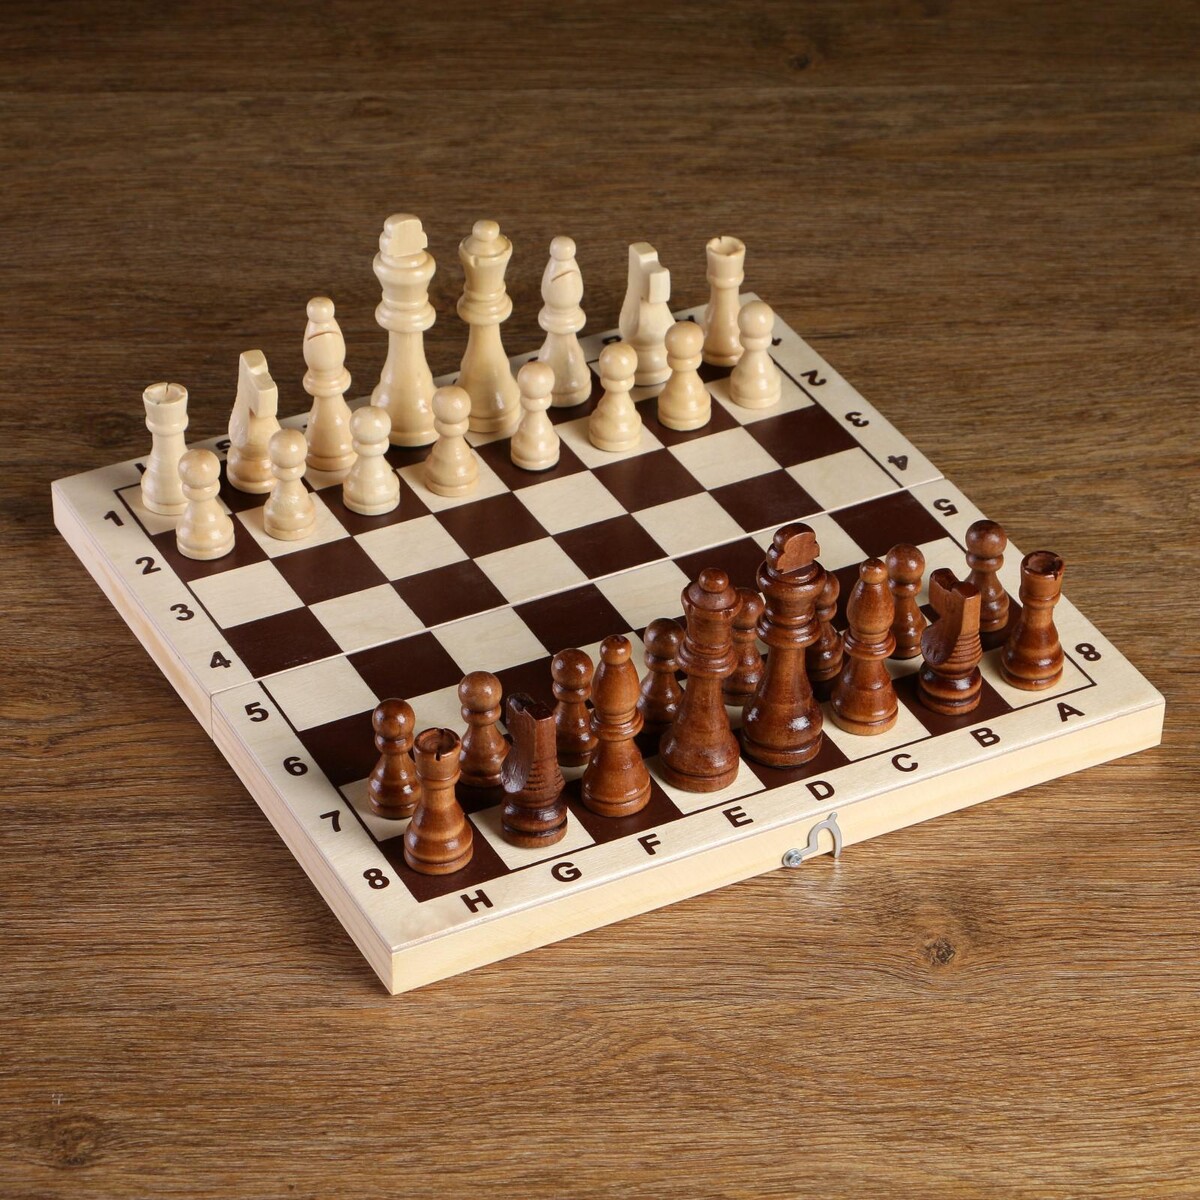 Шахматные фигуры, король h-8 см, пешка h-4 см основные шахматные окончания